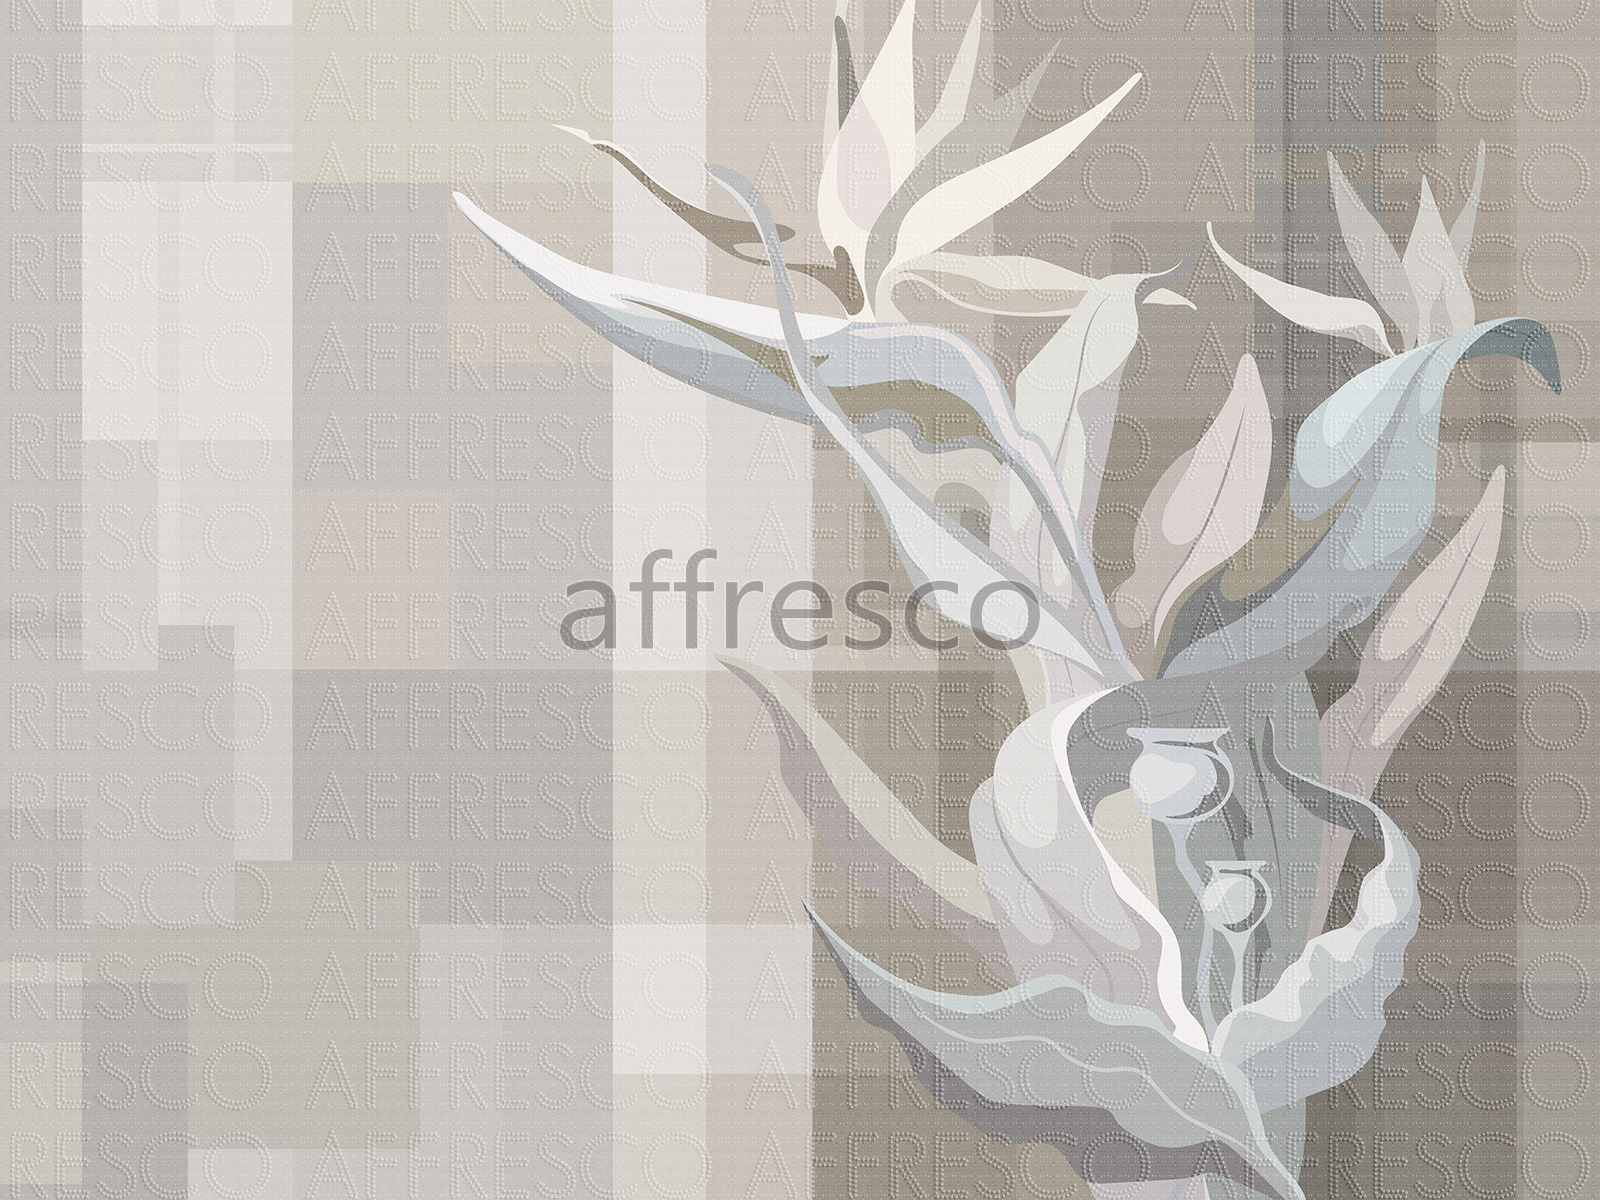 AF2200-COL1 | Fantasy | Affresco Factory